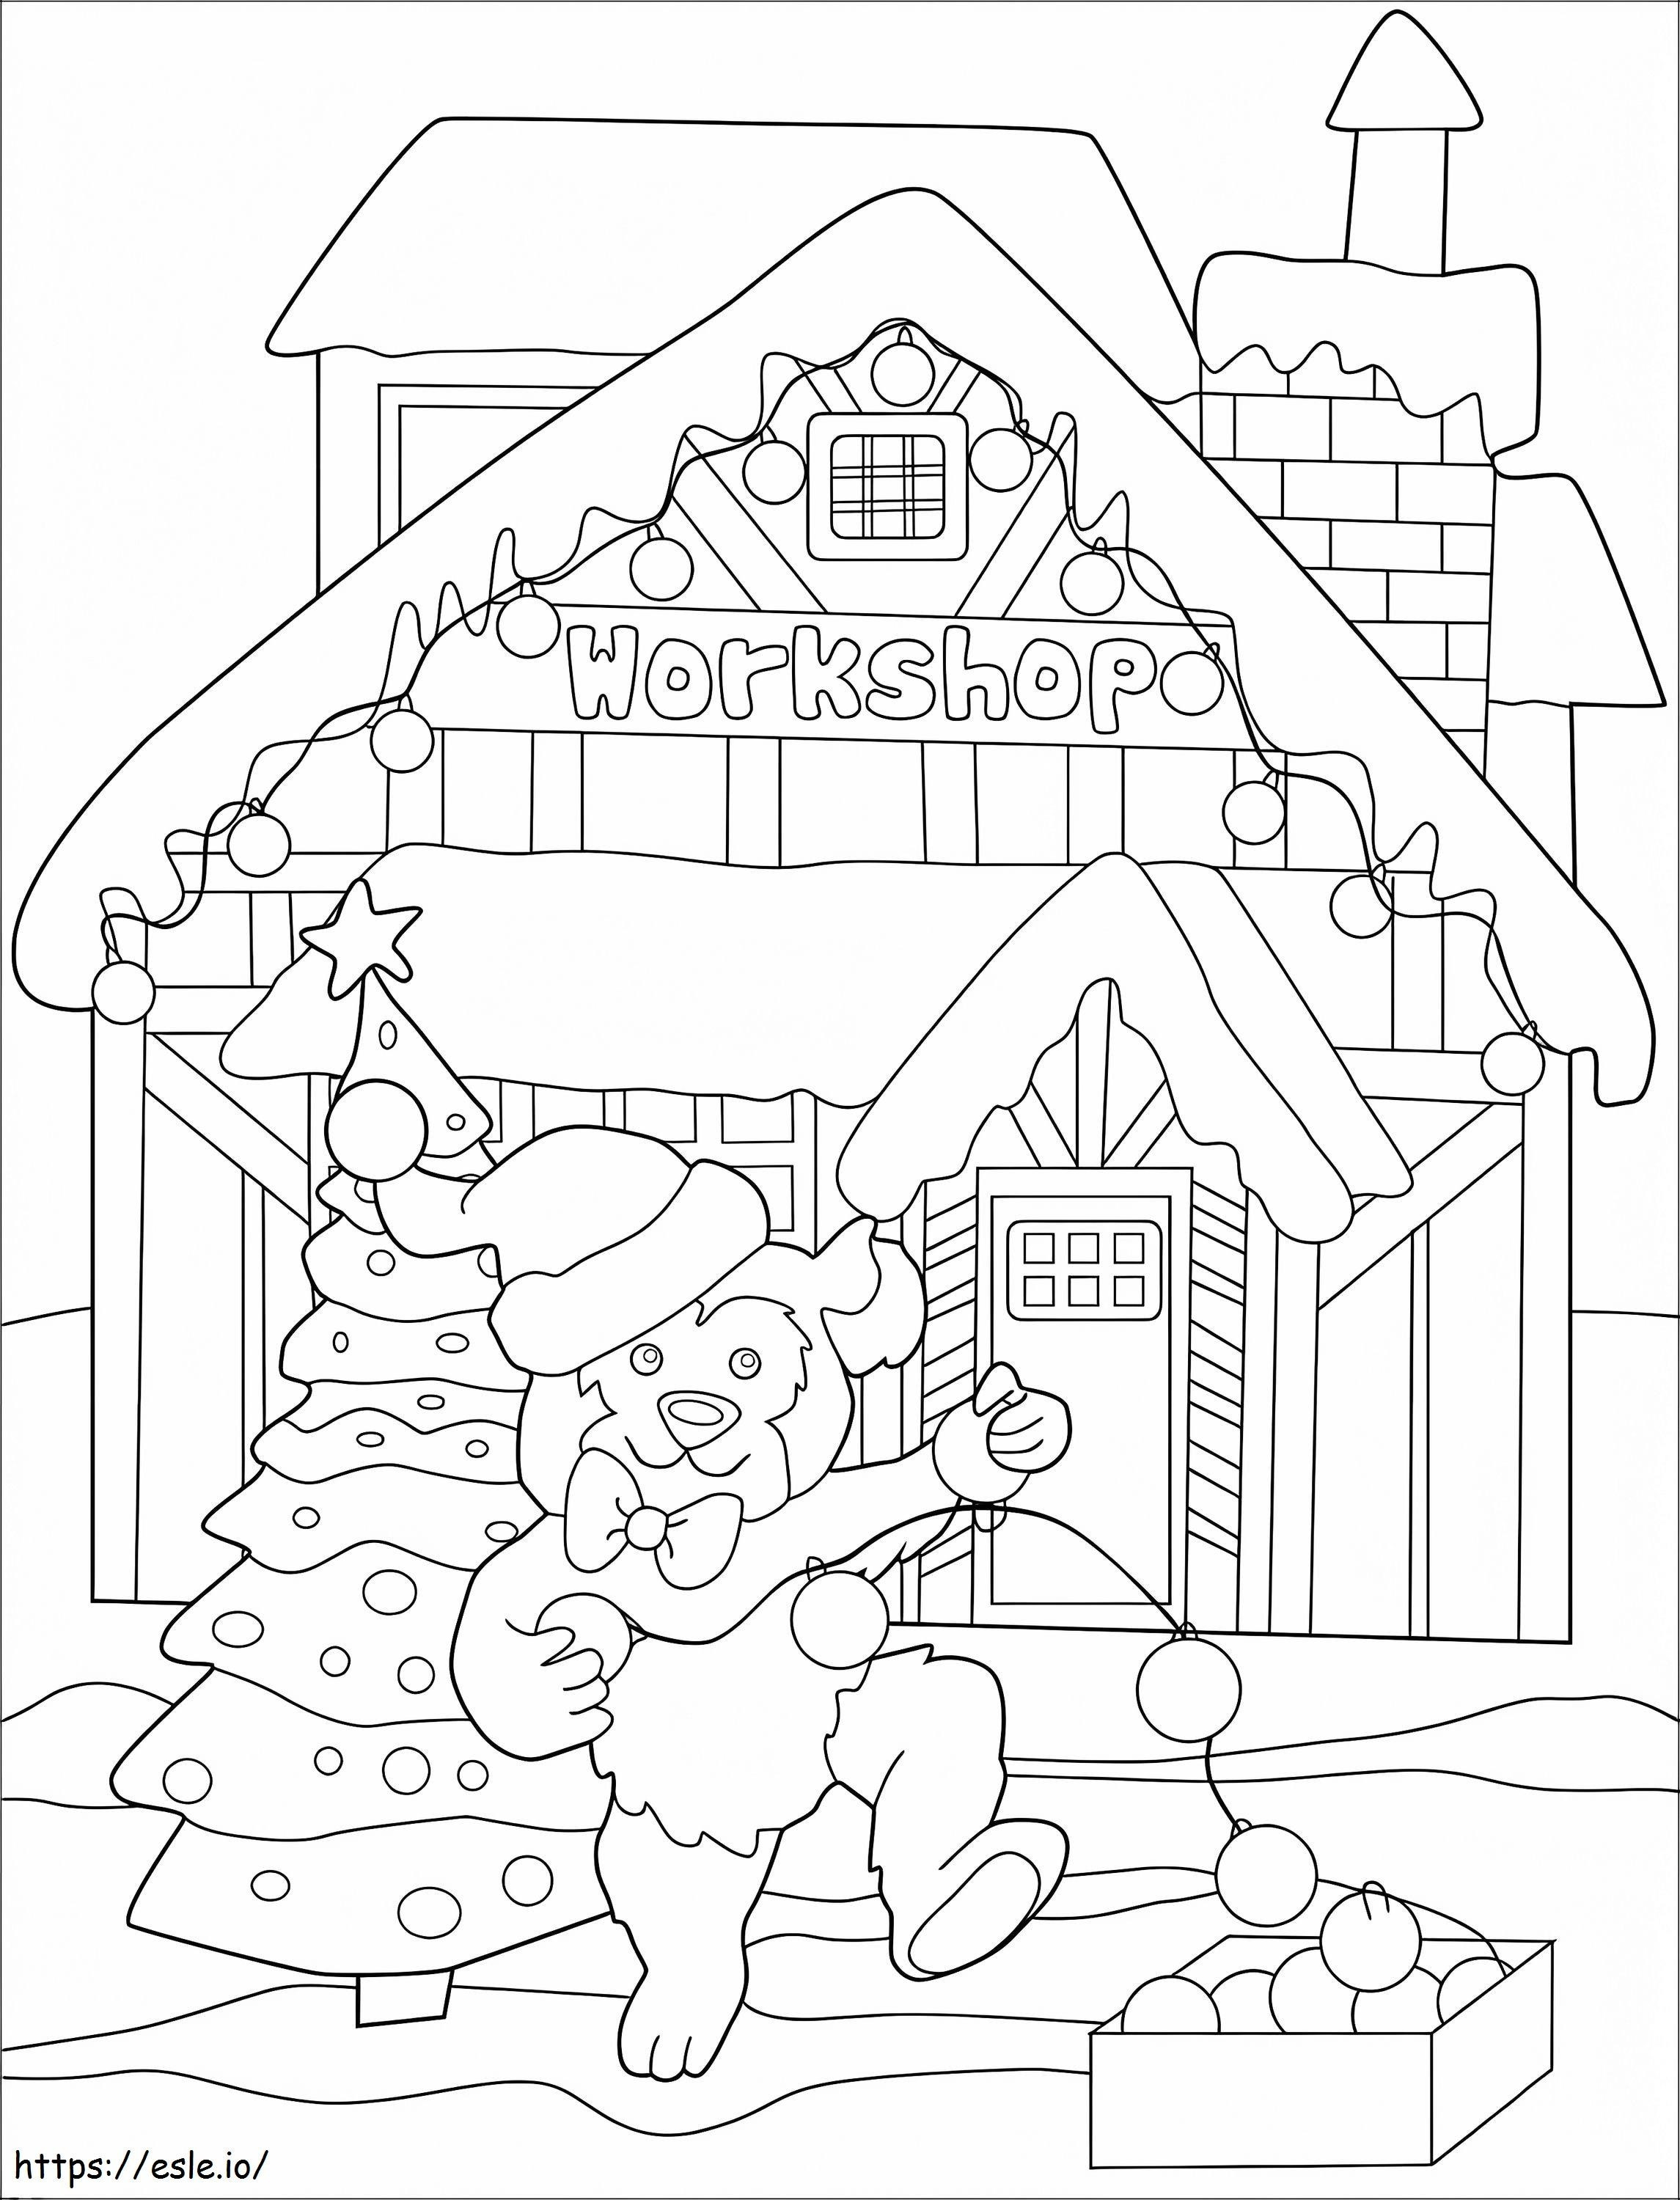 Coloriage Ours de Noël à imprimer dessin